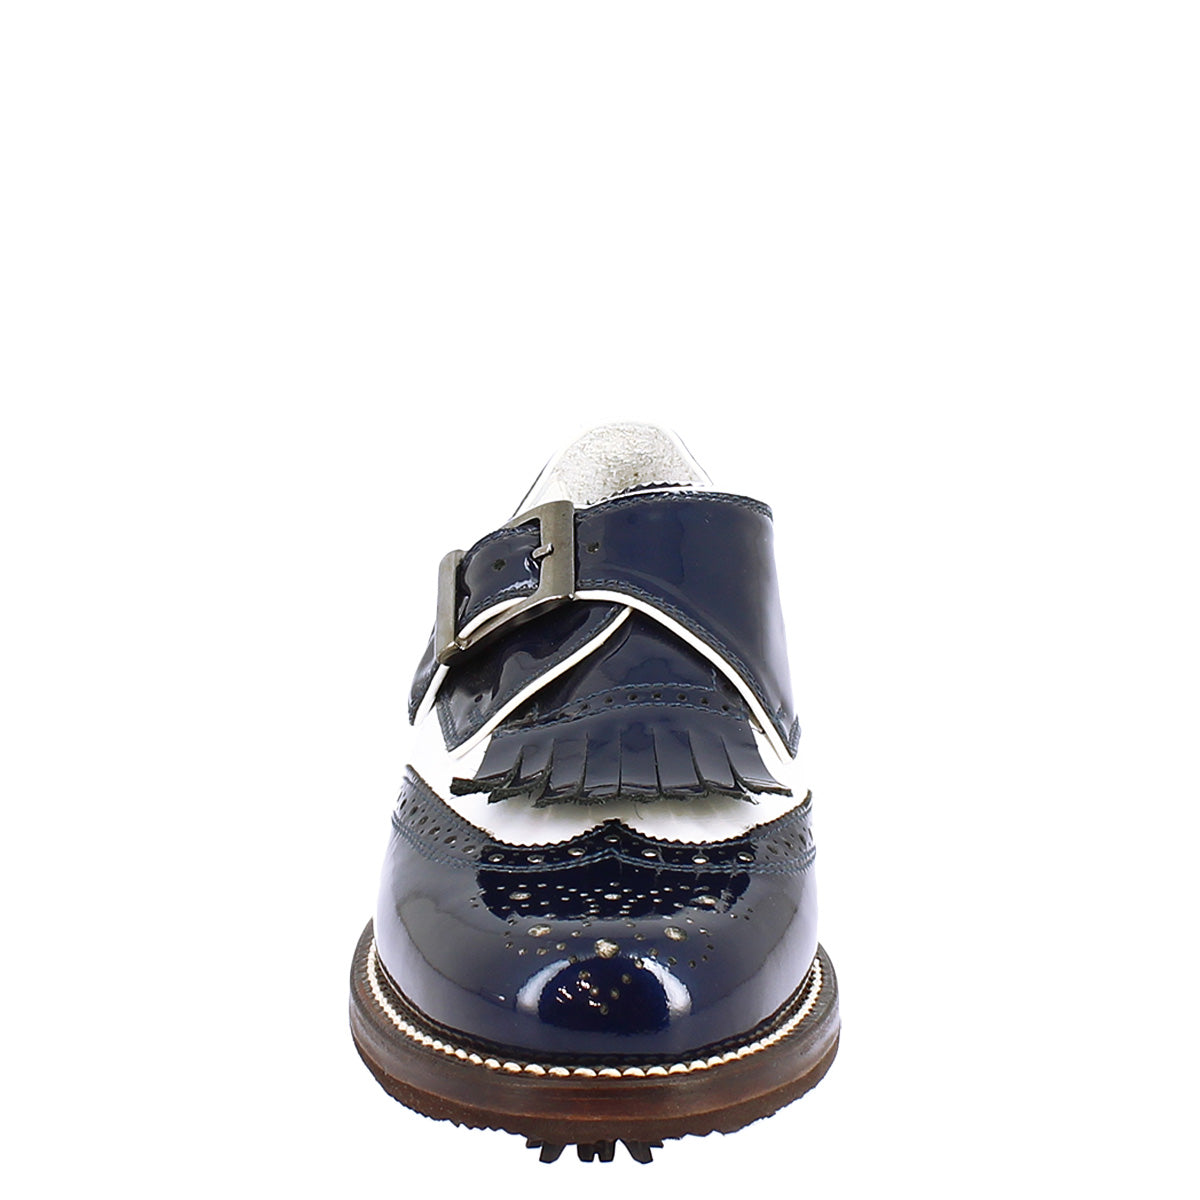 Herren-Schnallenschuhe aus weißem Leder und blauem Lackleder